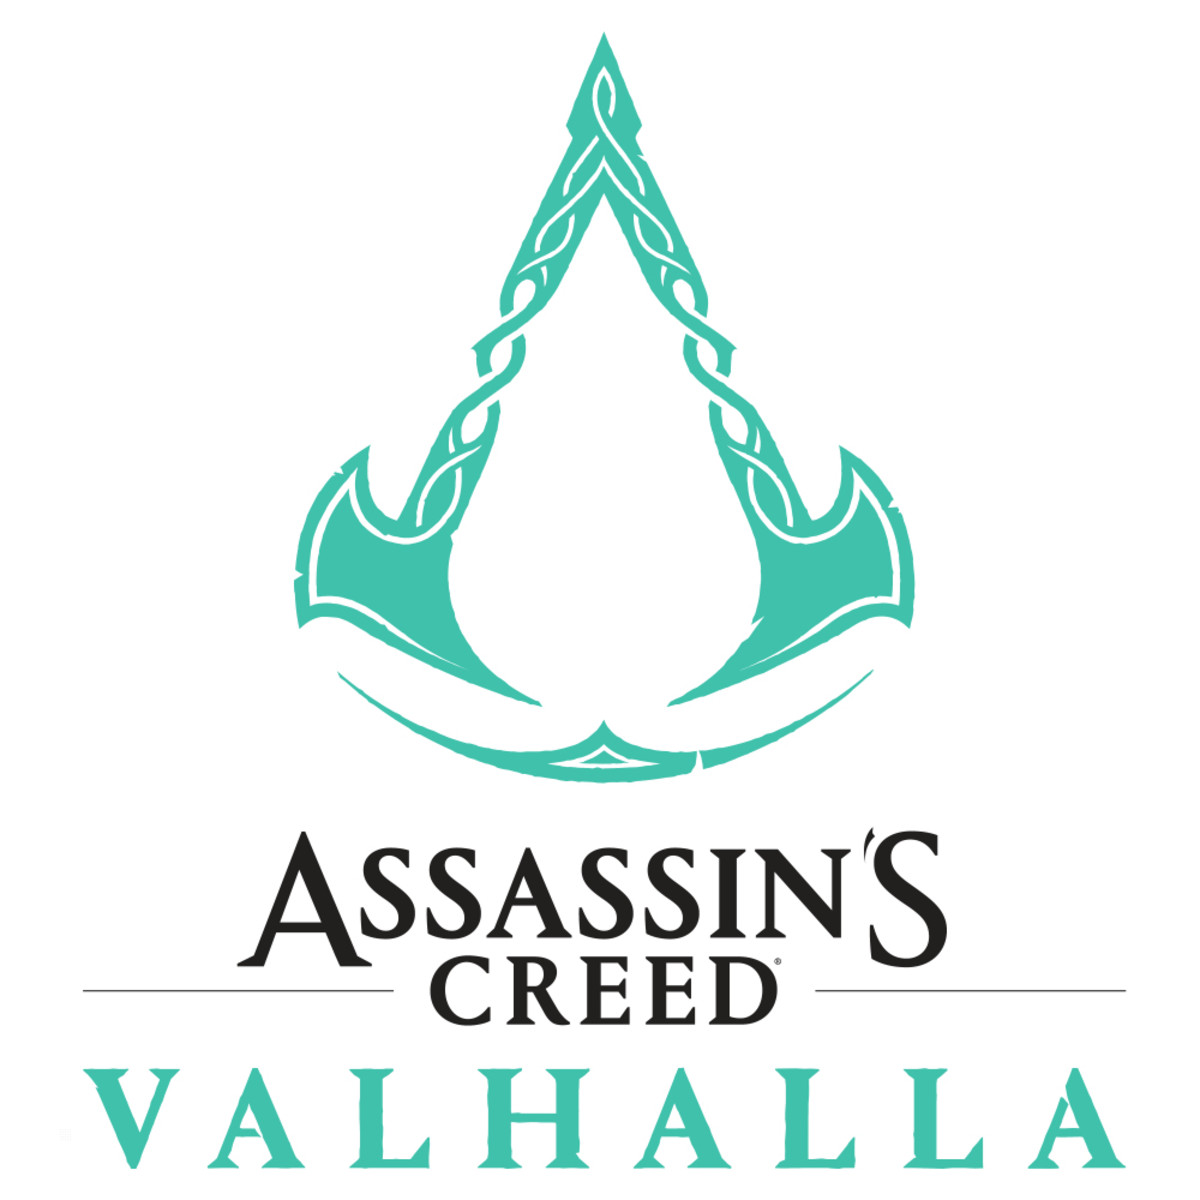 Ass Creed Val Ragnarok Ed PS4